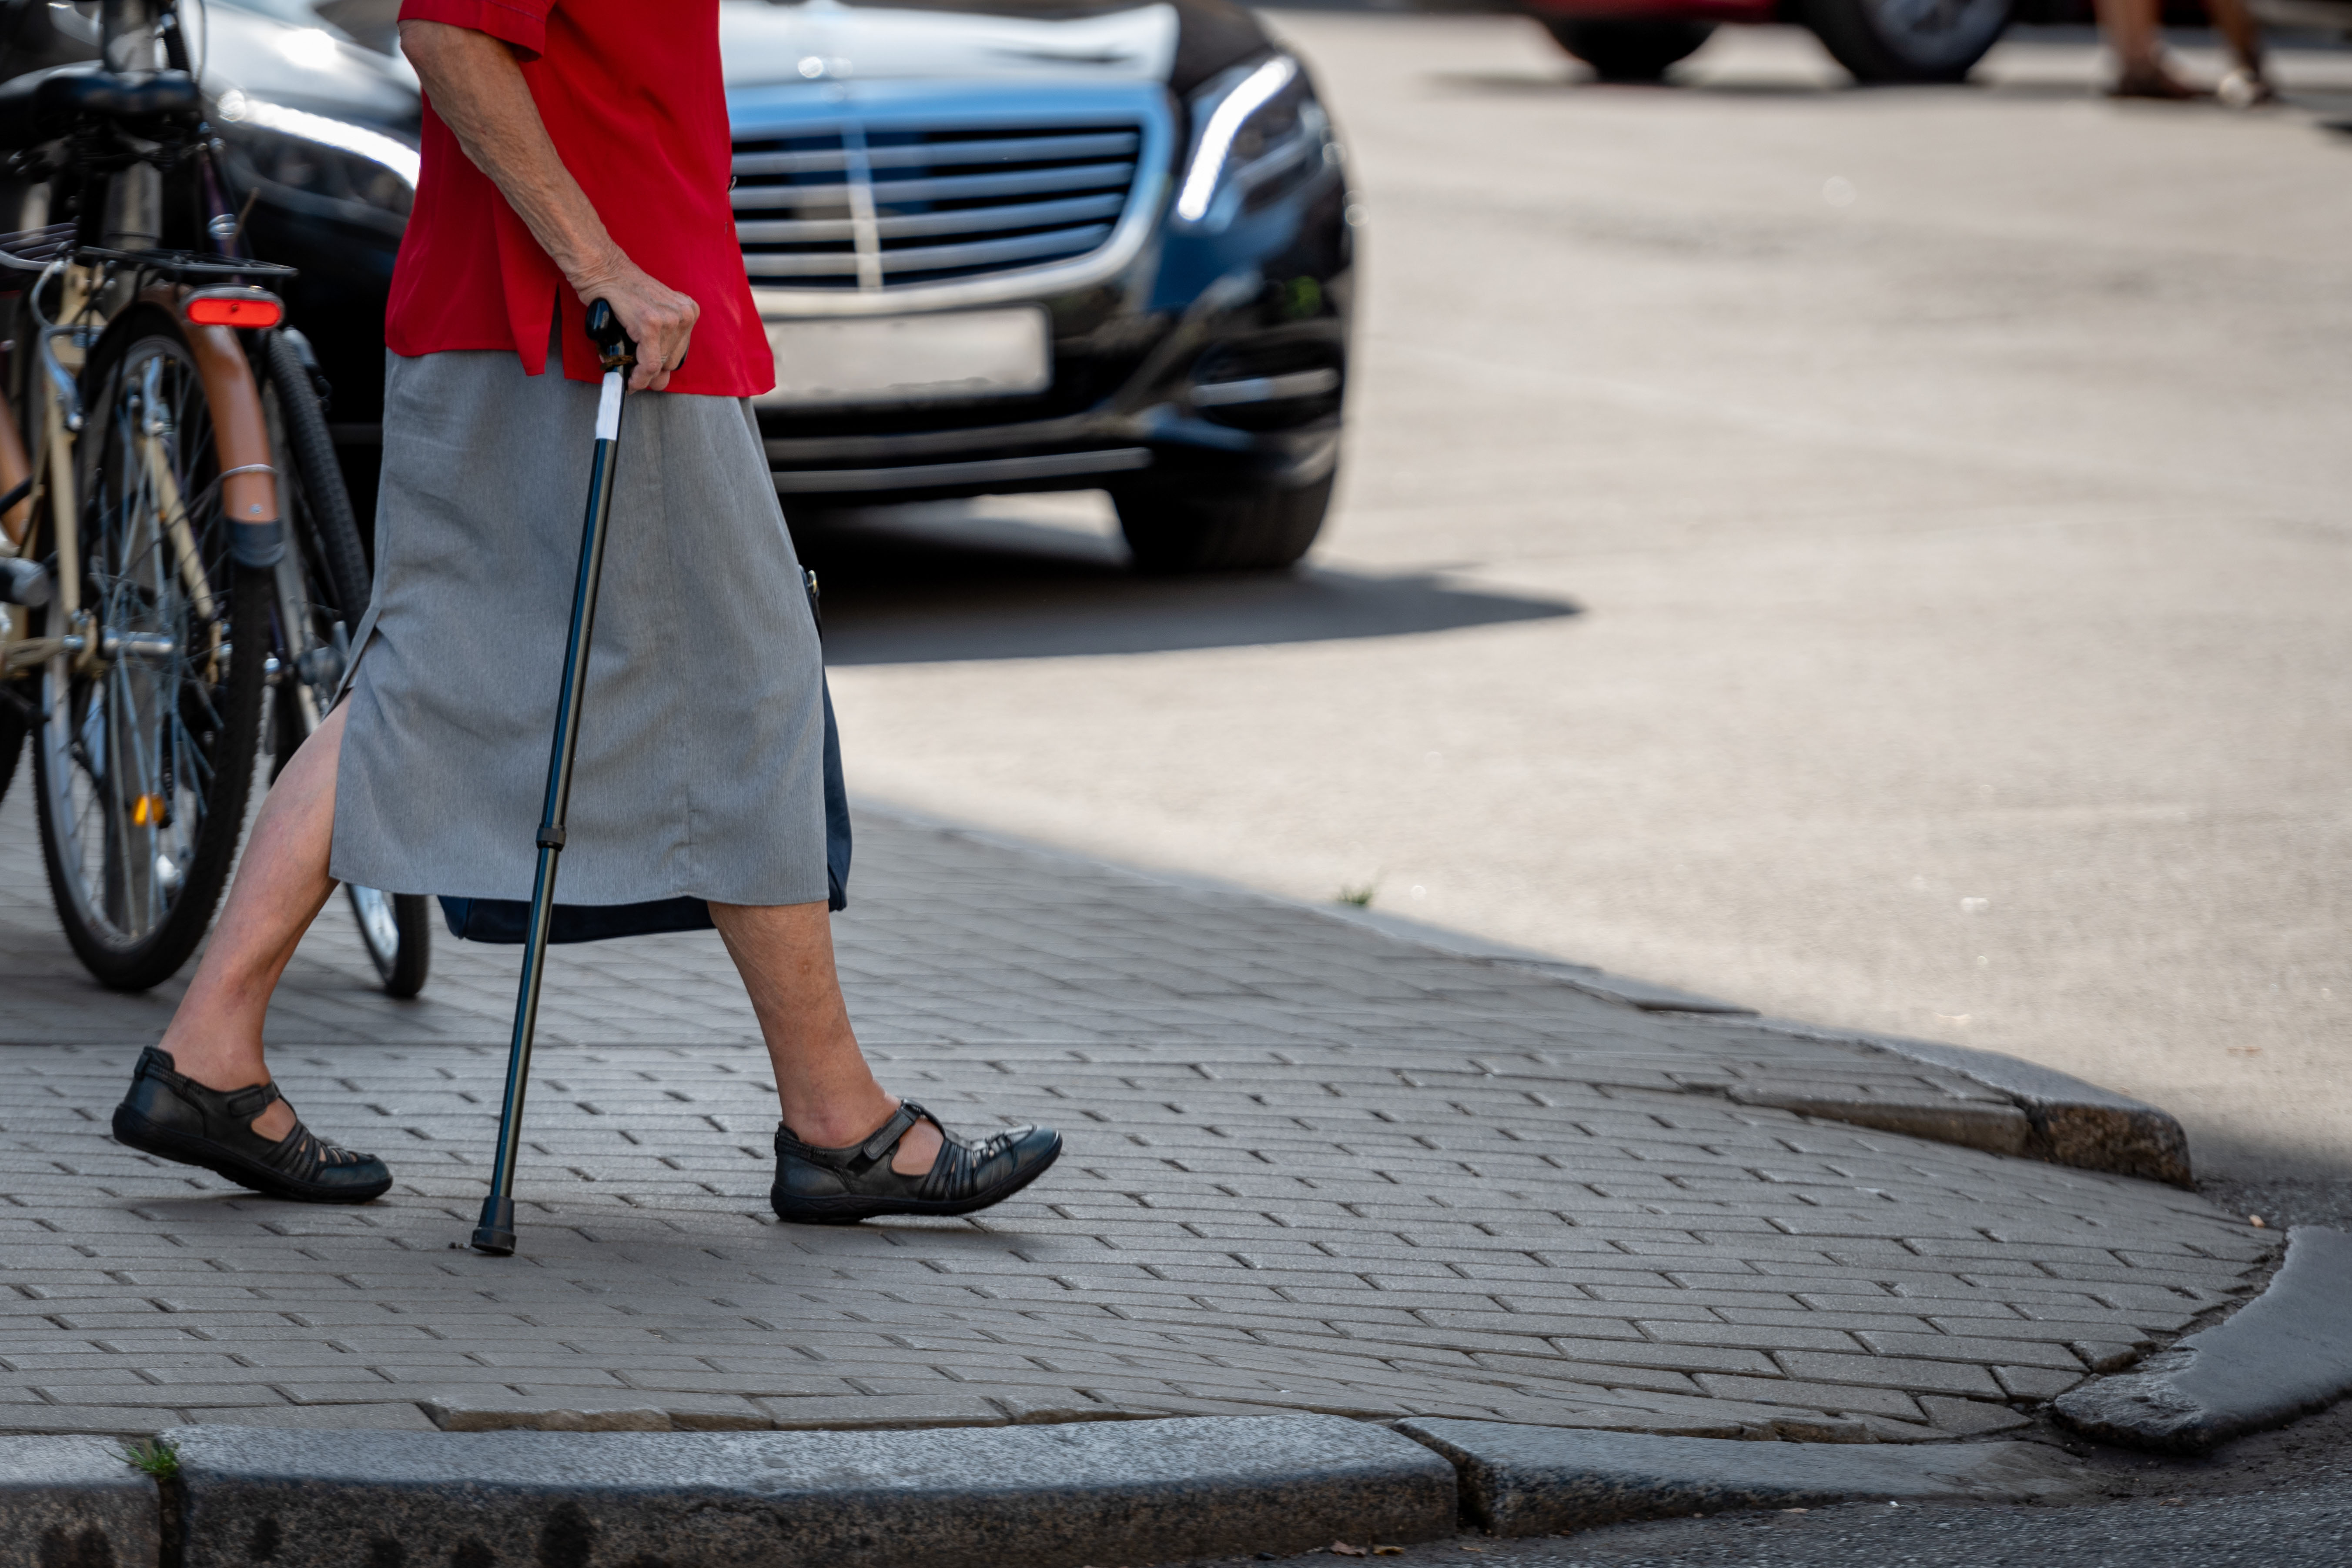 Old woman crossing a street | Source: Shutterstock